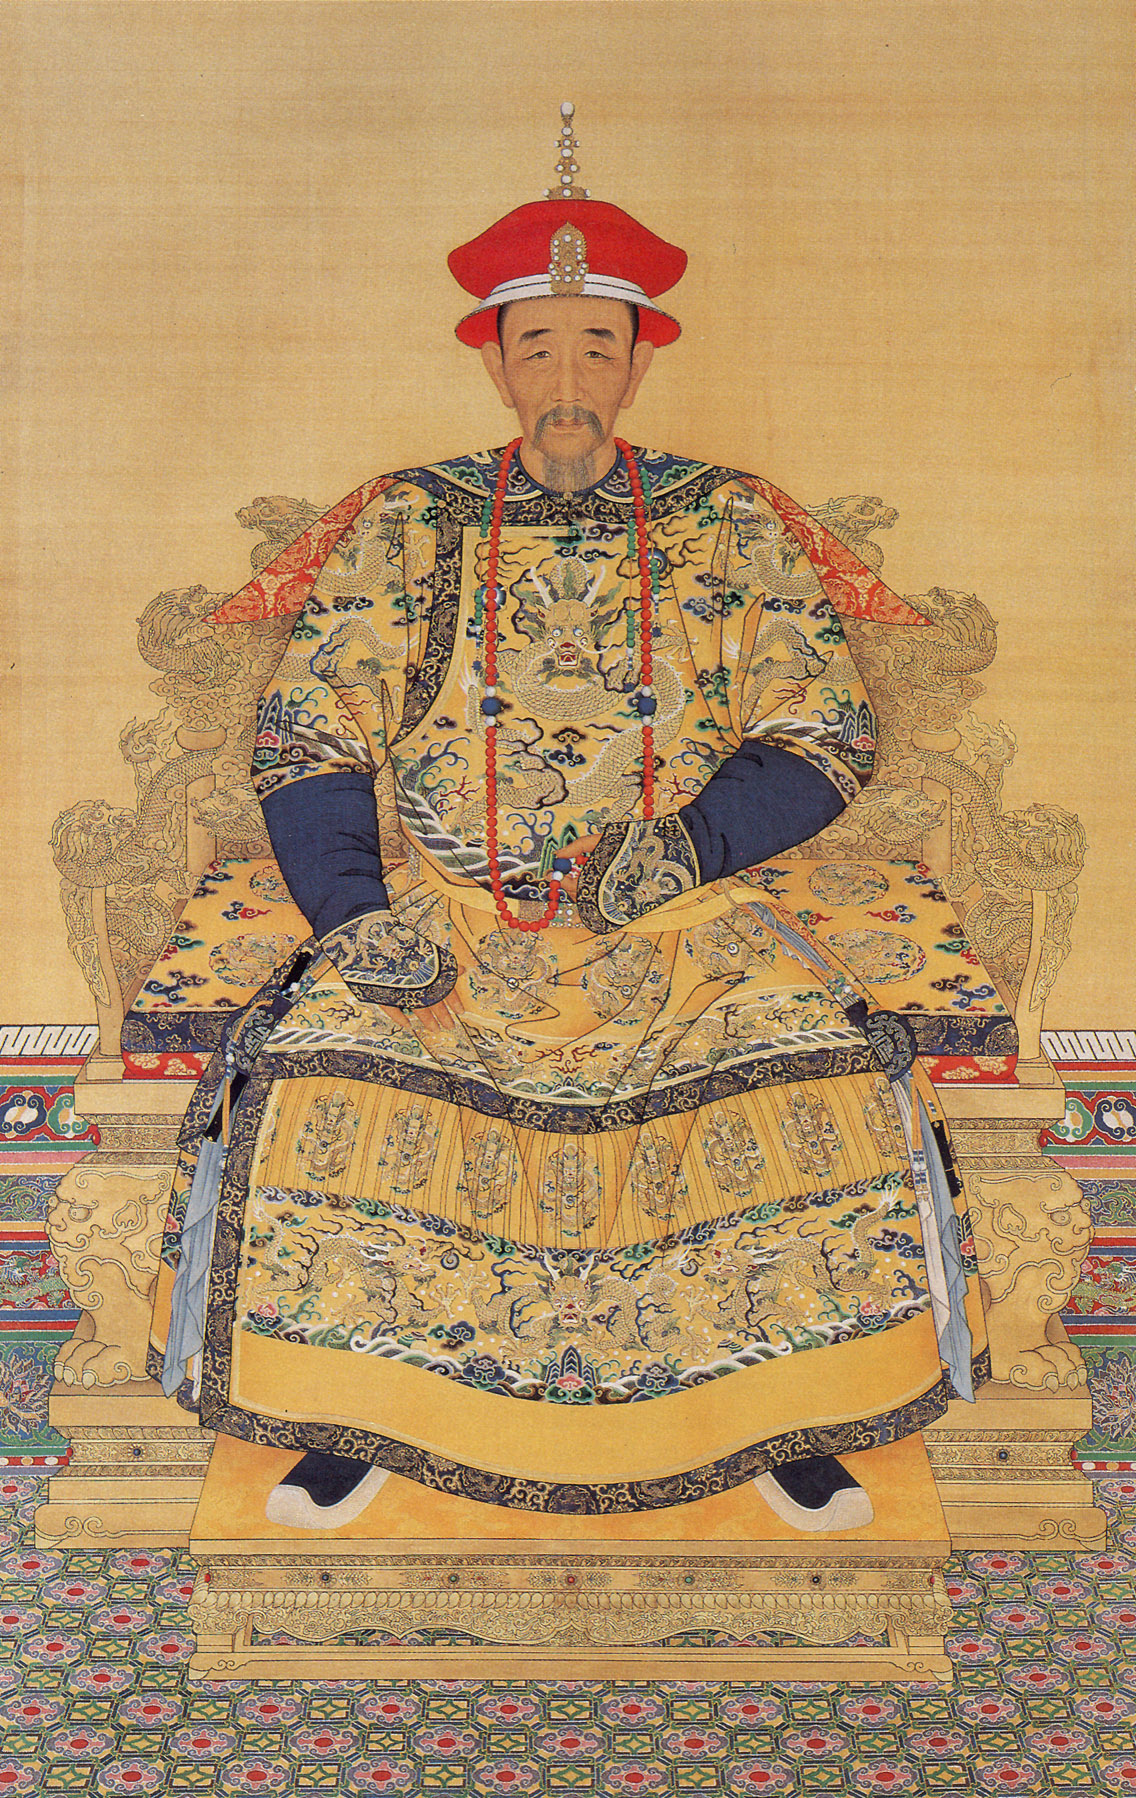 Kangxi İmparatoru'nun saray kıyafetleri içinde portresi.